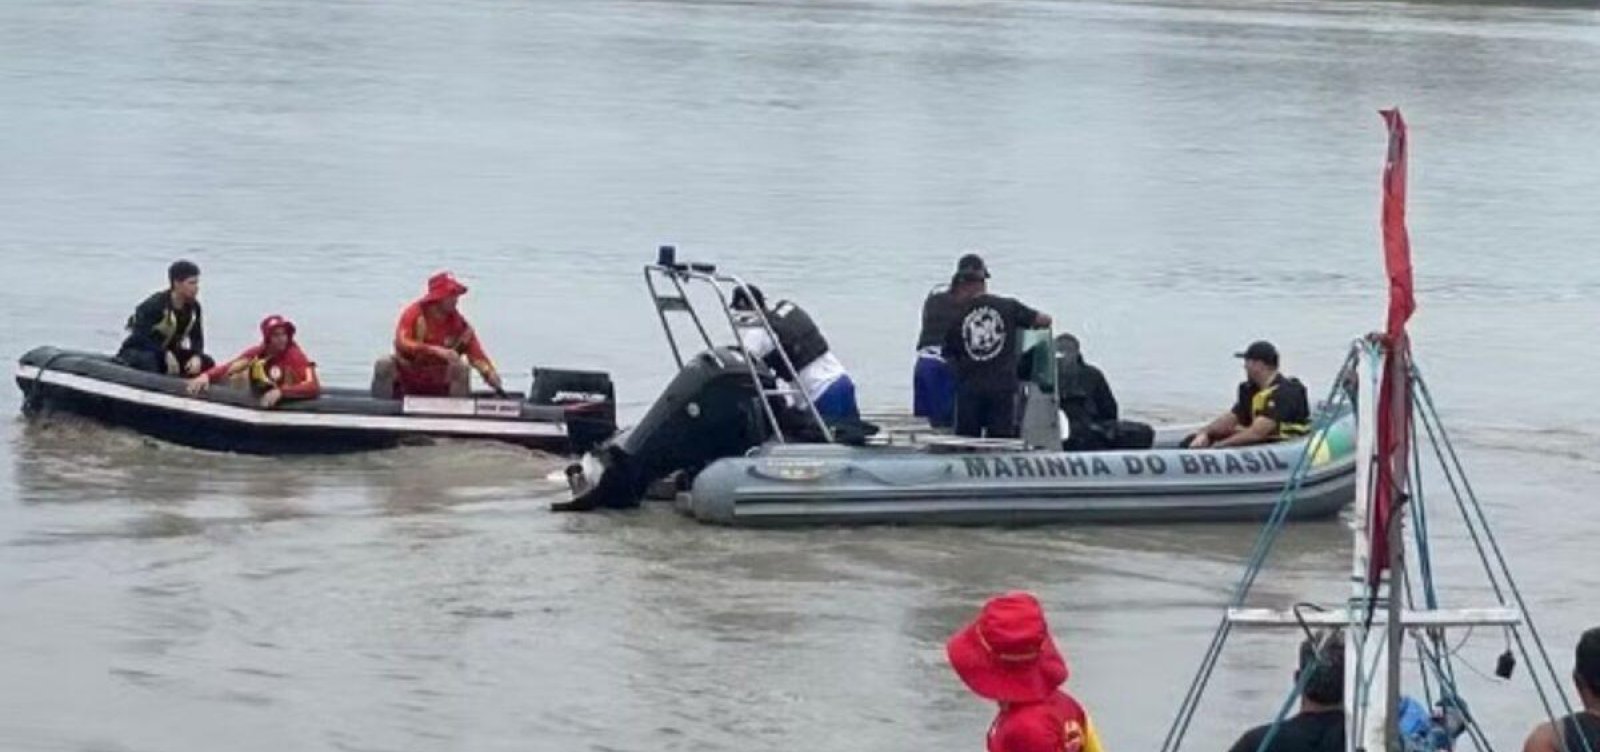 PF investiga se corpos encontrados em barco no Pará são de refugiados do Caribe